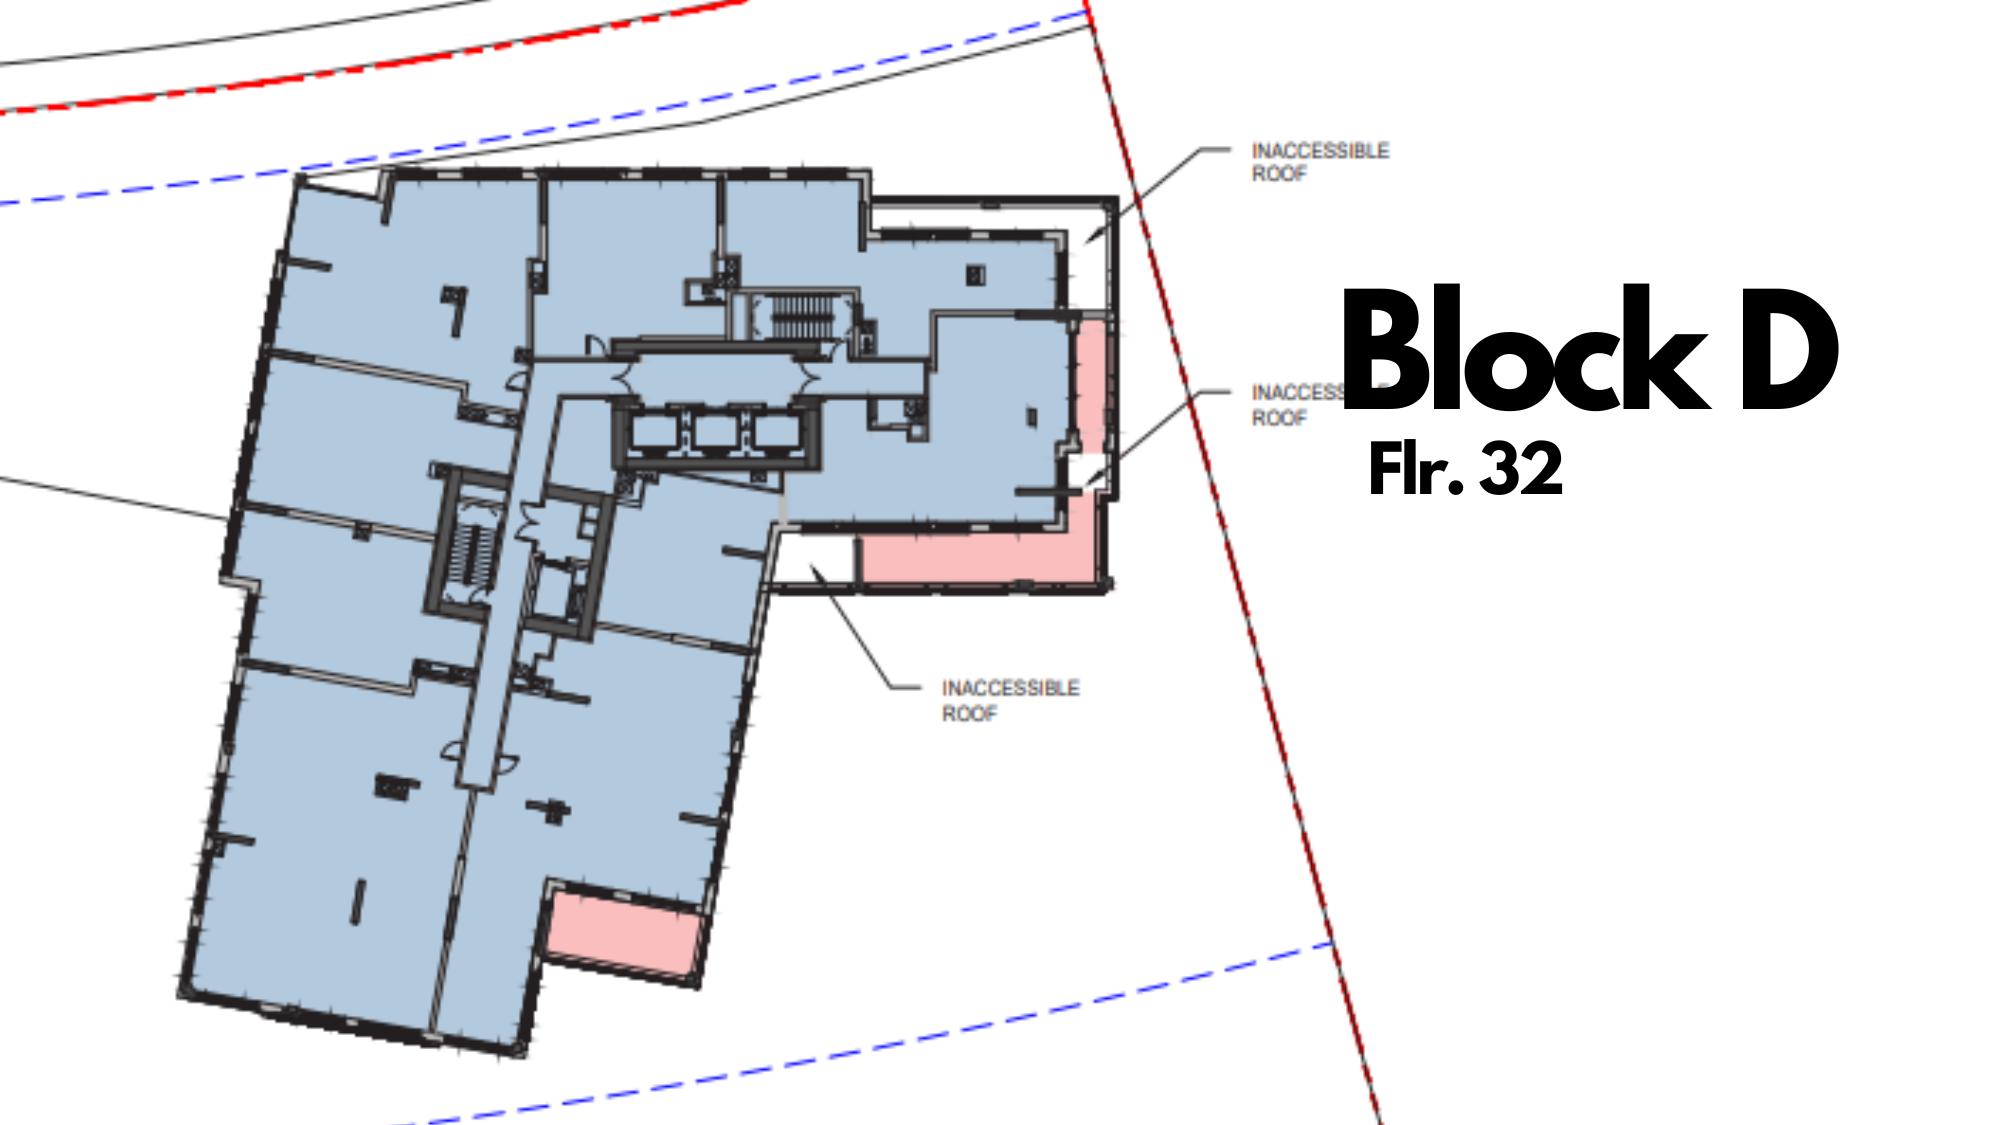 Block D Floor 32